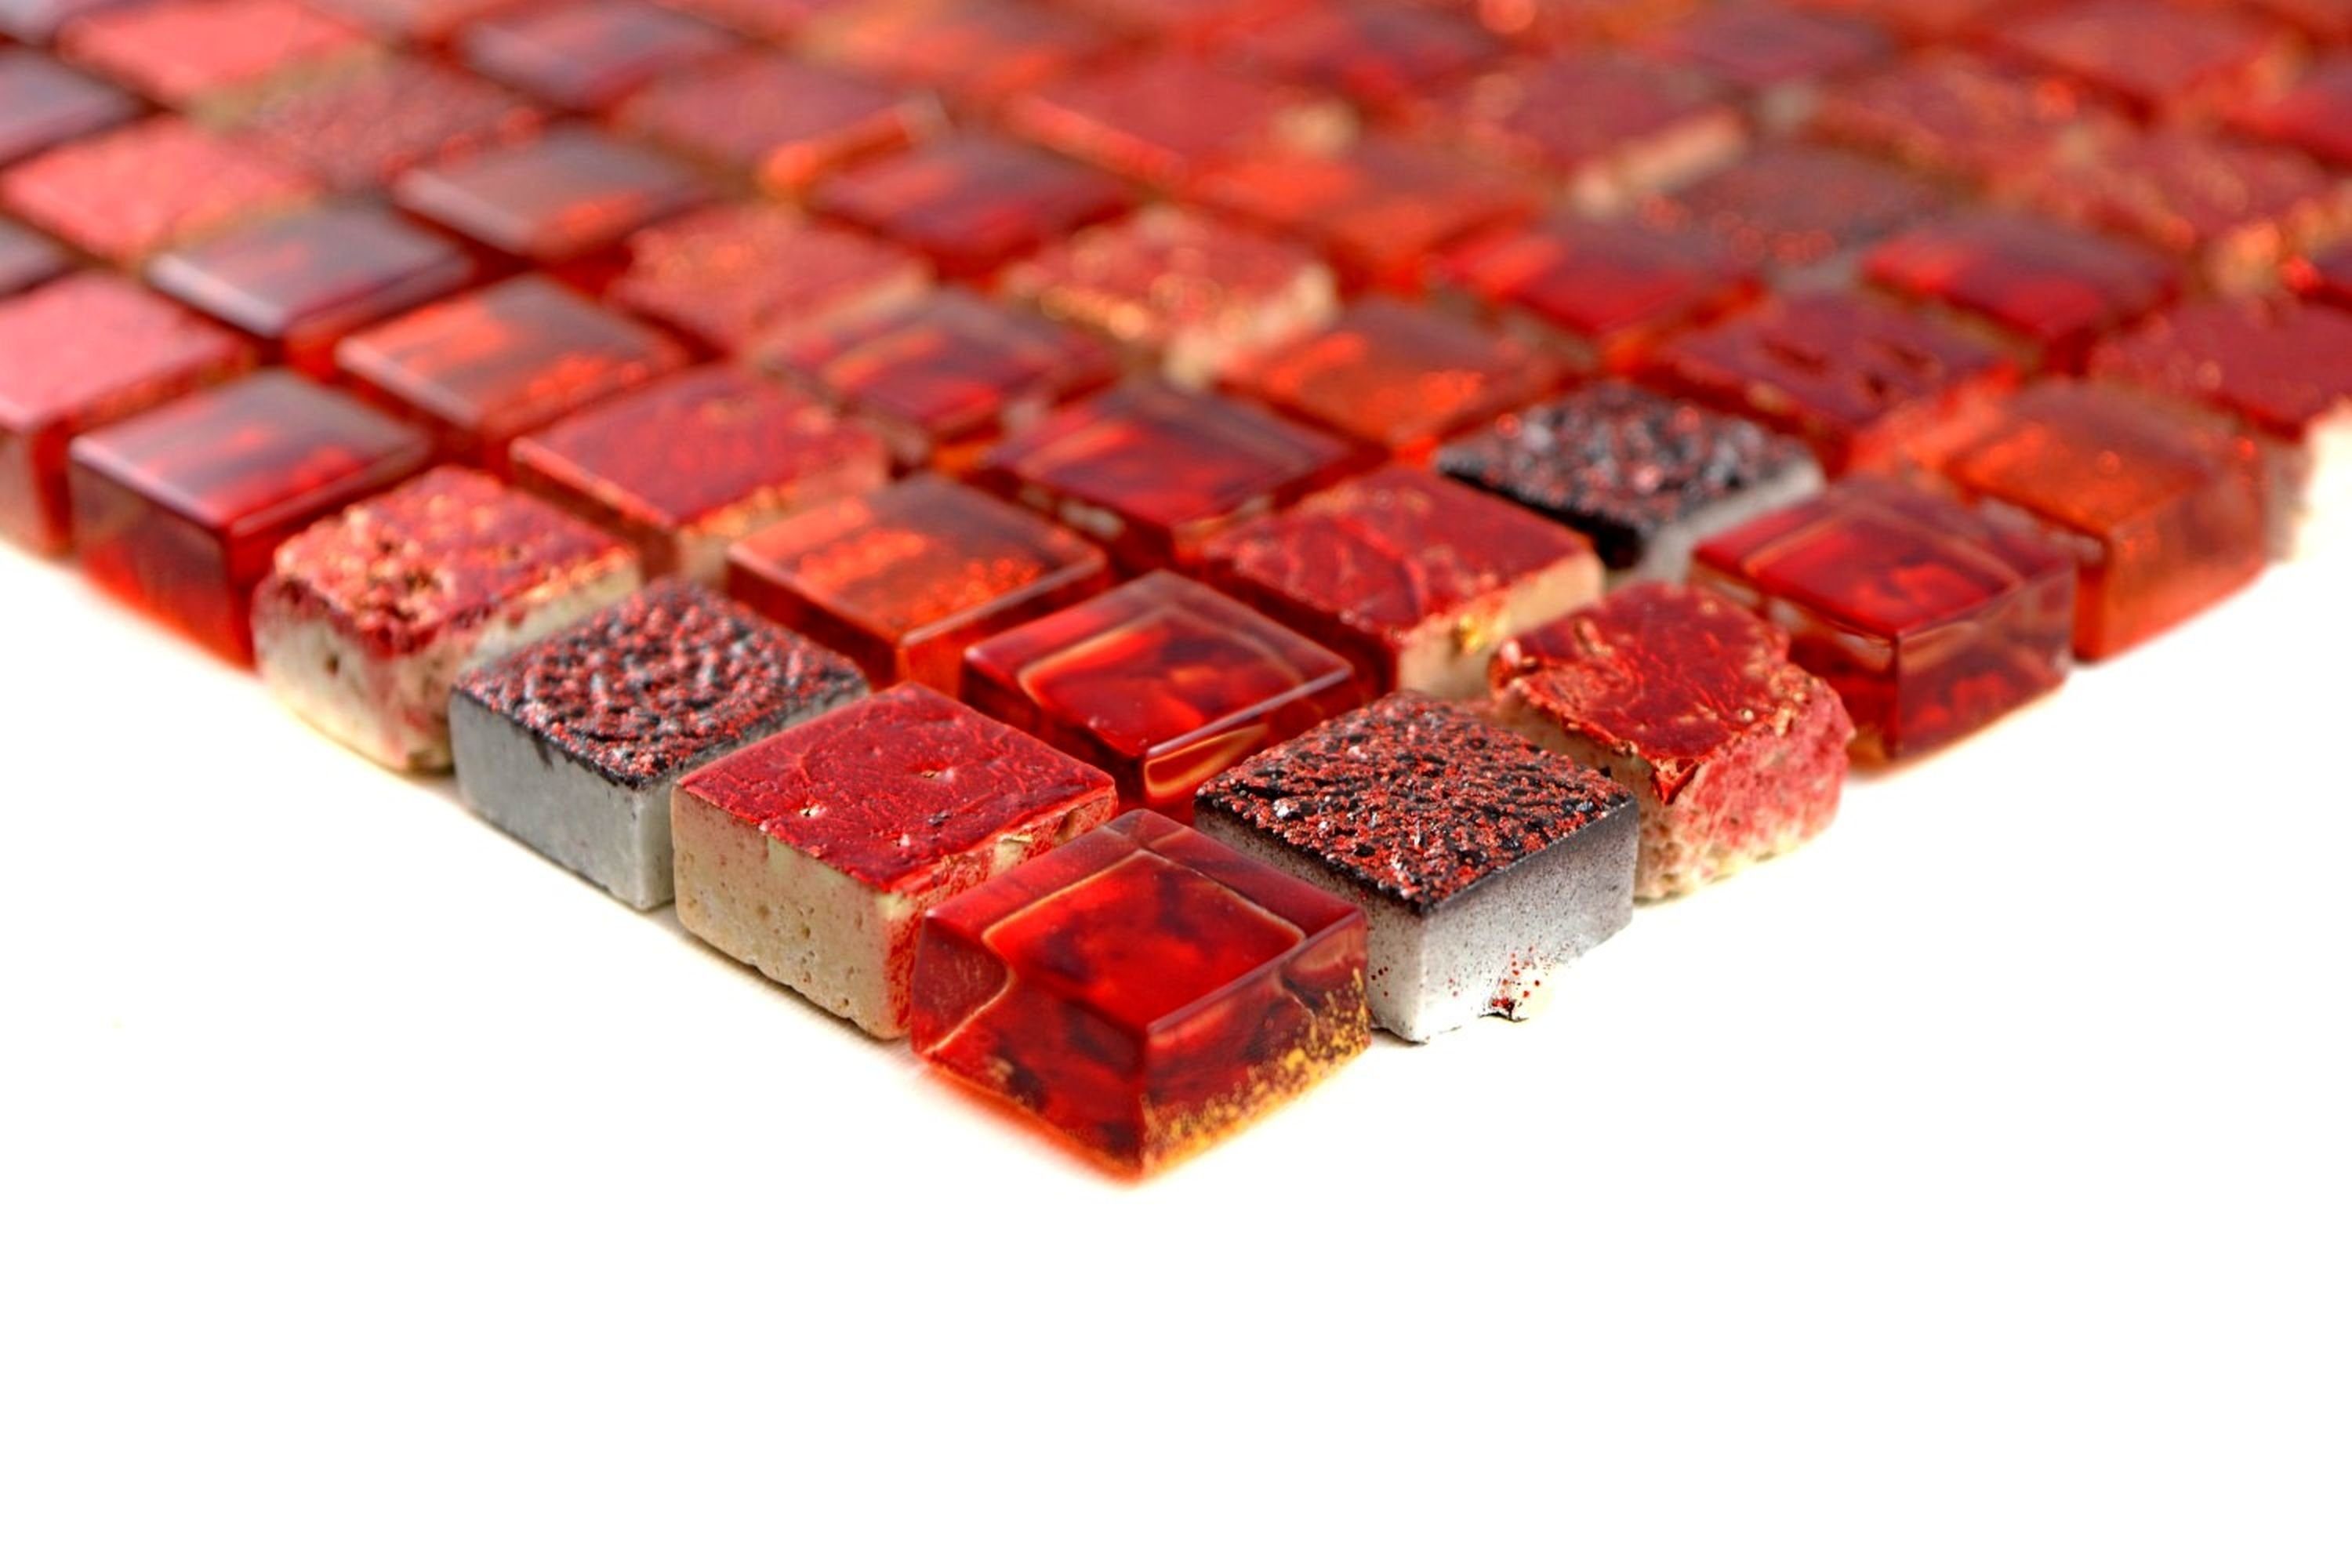 Mosani Mosaikfliesen Glasmosaik Mosaikfliese BAD WC Resin rot dunkelrot